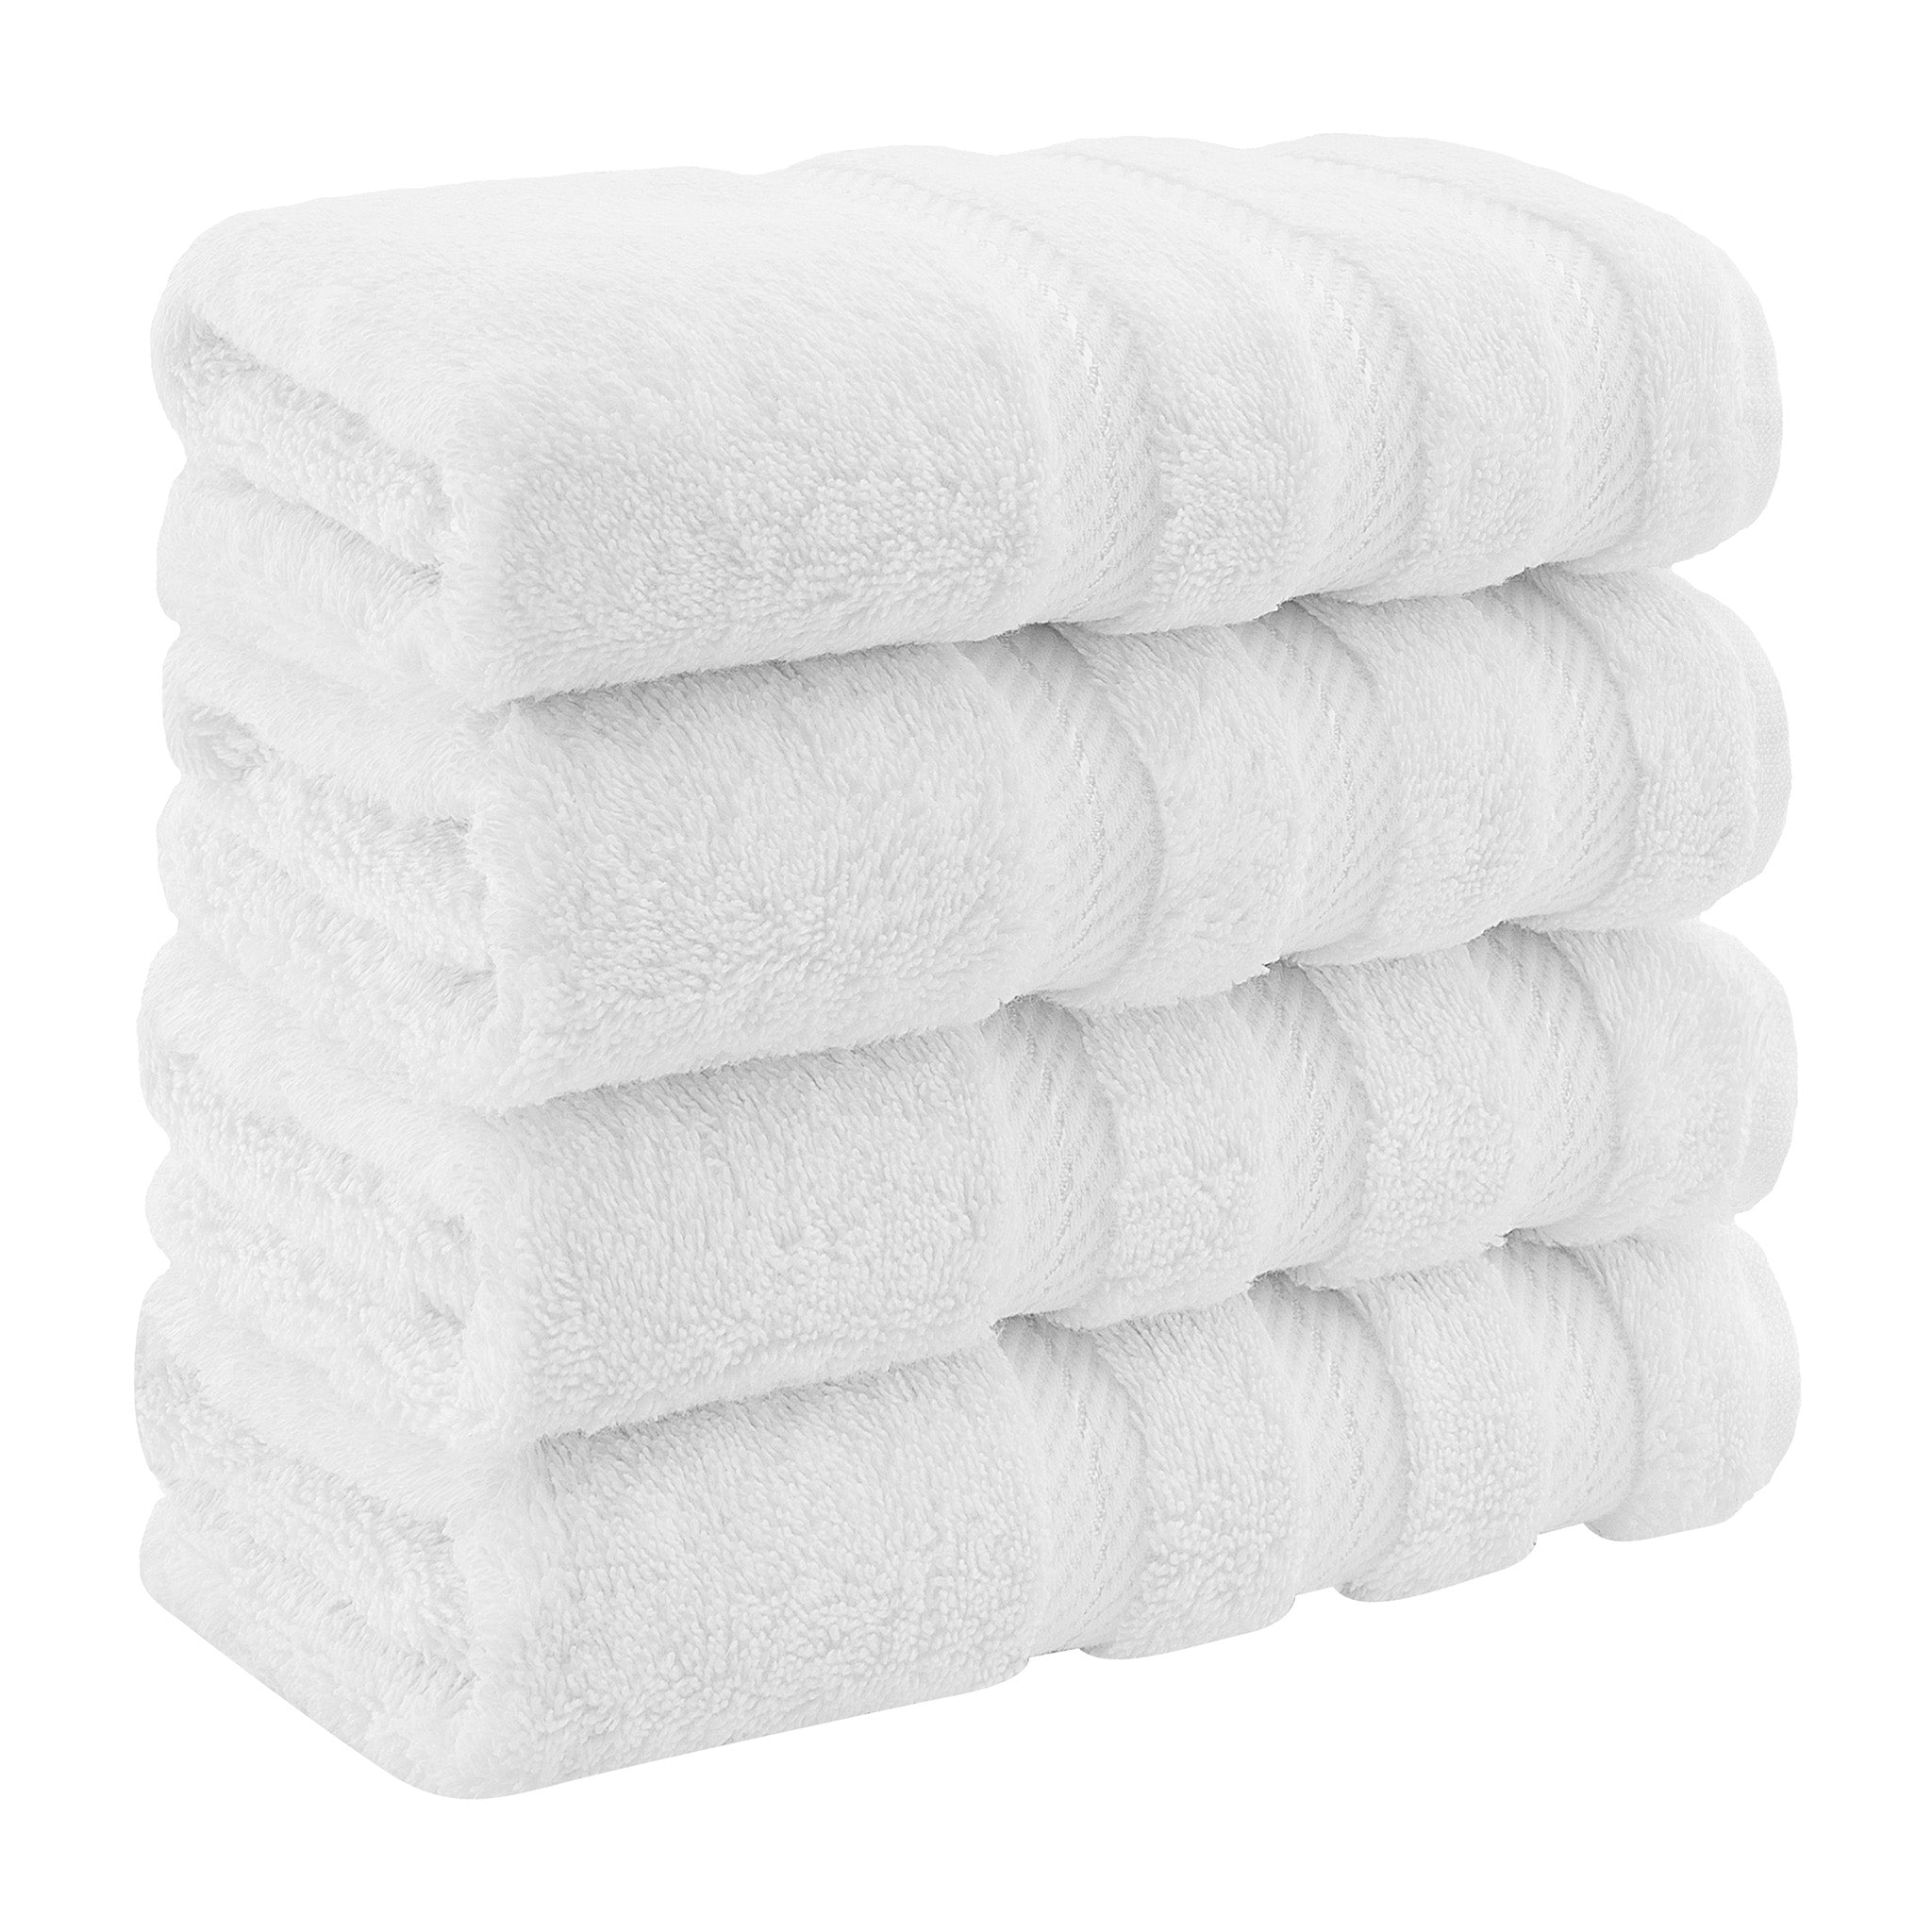 https://americansoftlinen.com/cdn/shop/files/american-soft-linen-4-pack-hand-towel-set-white-1.jpg?v=1698068061&width=2048